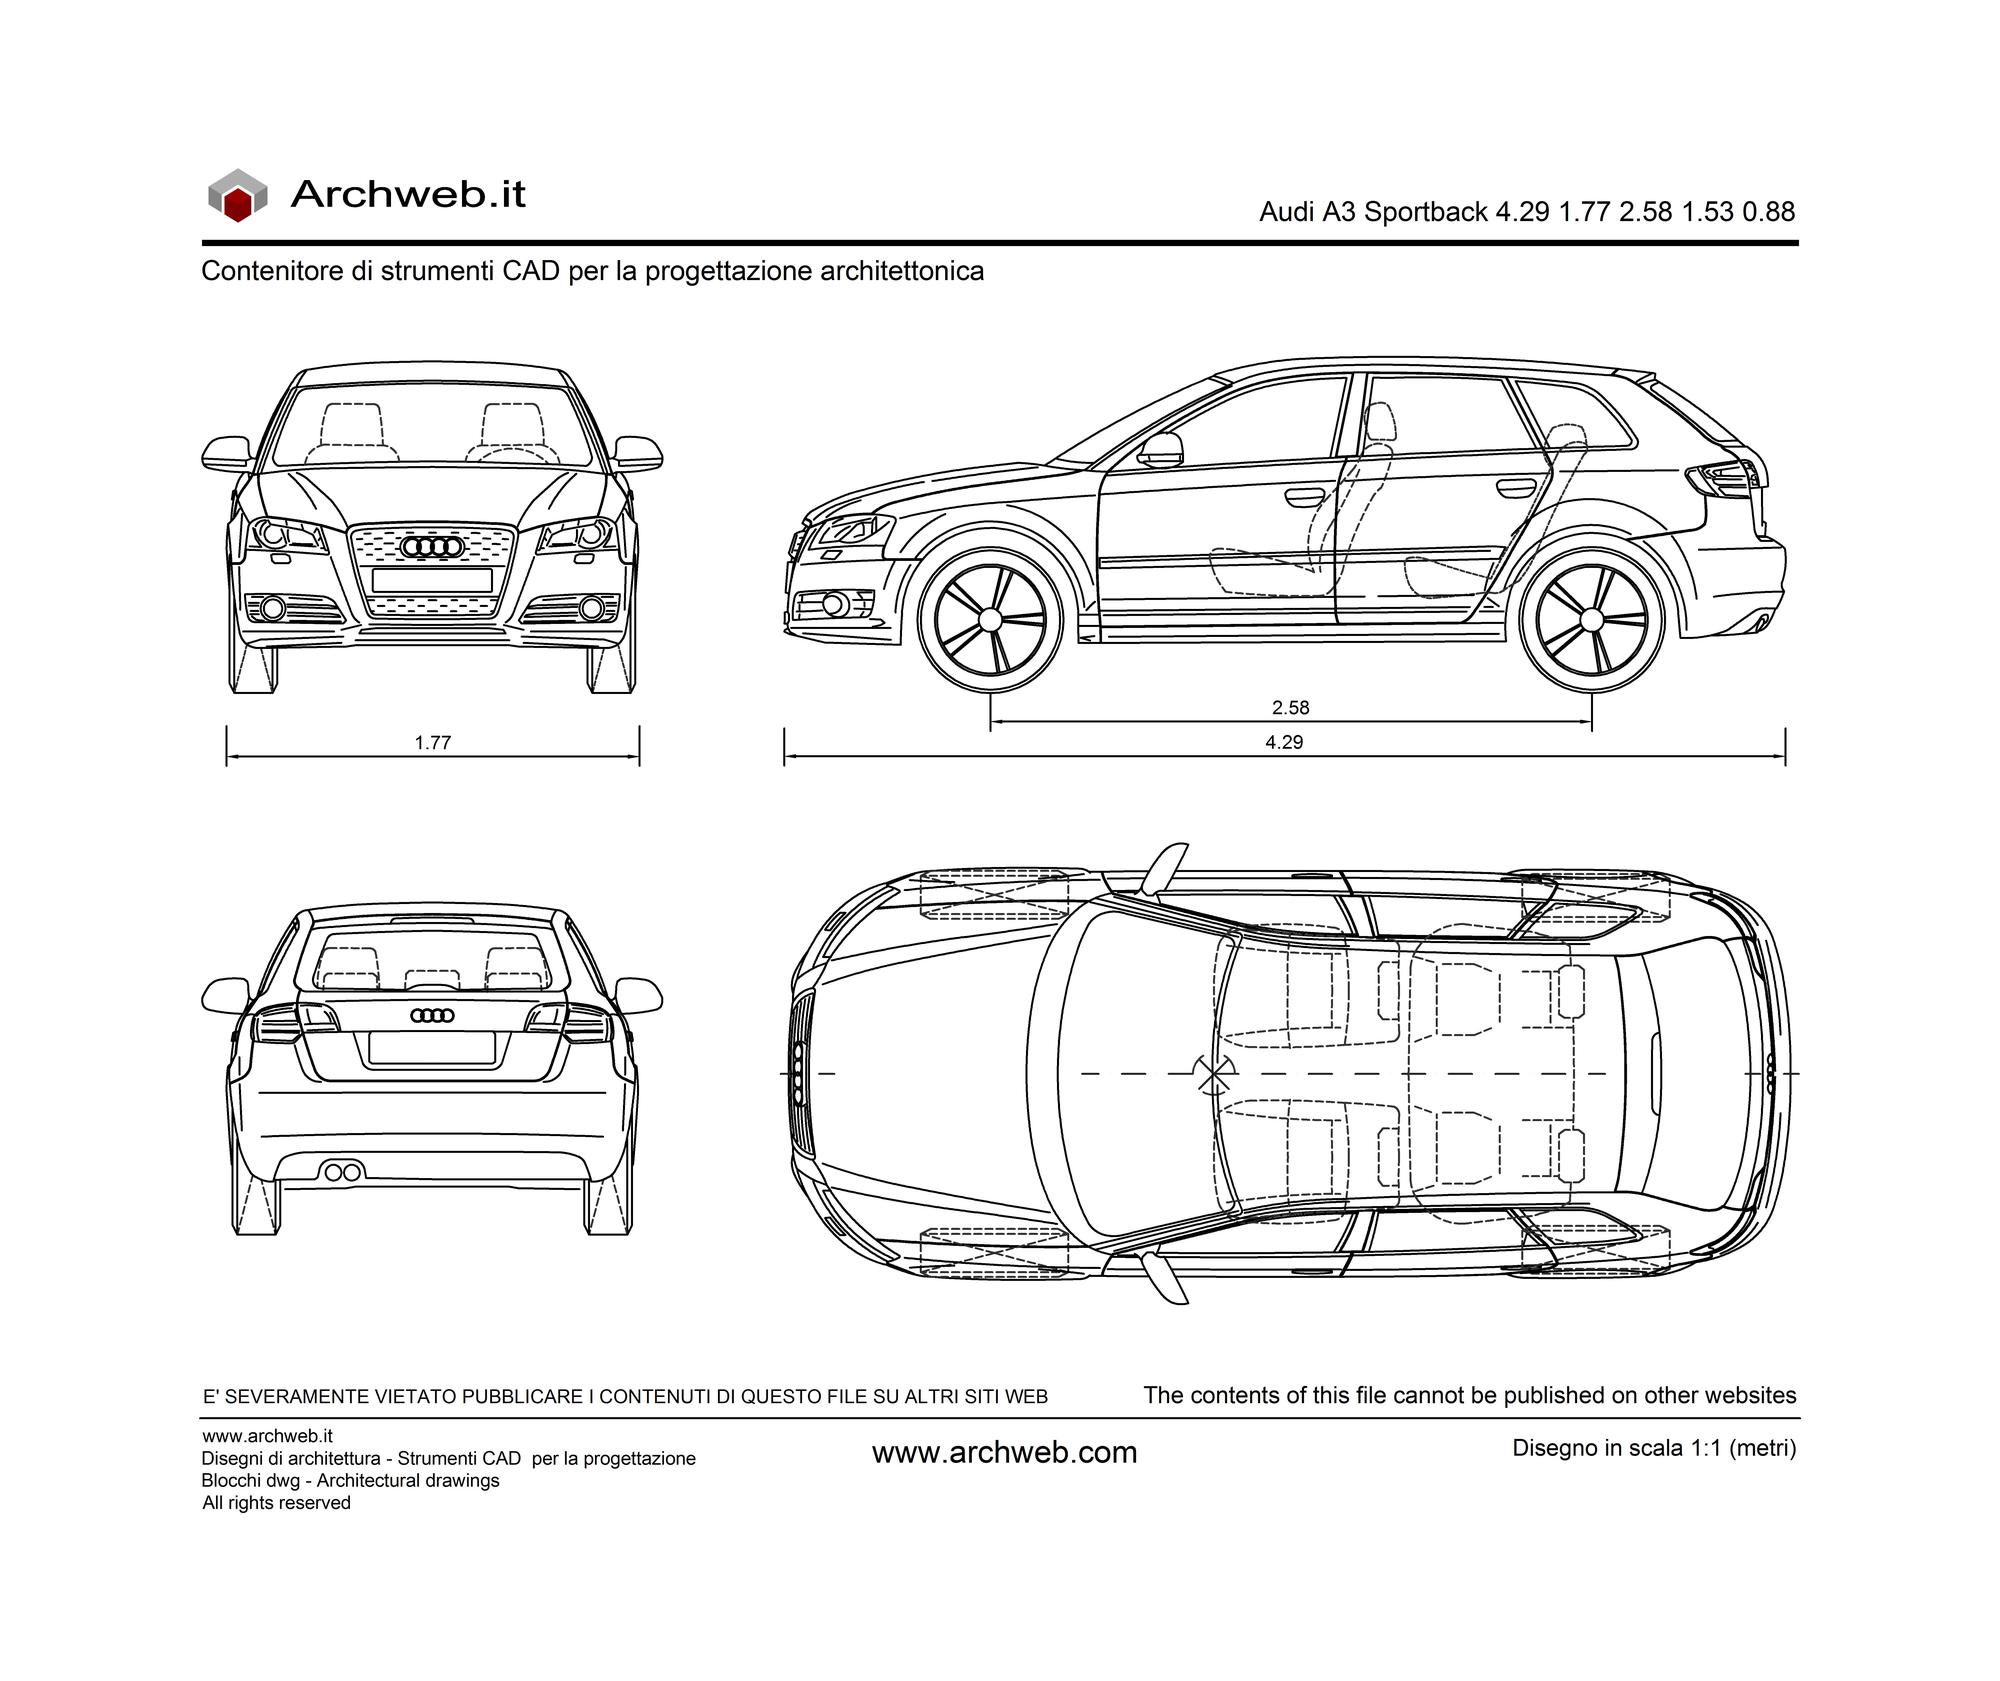 Audi A3 Sportback dwg